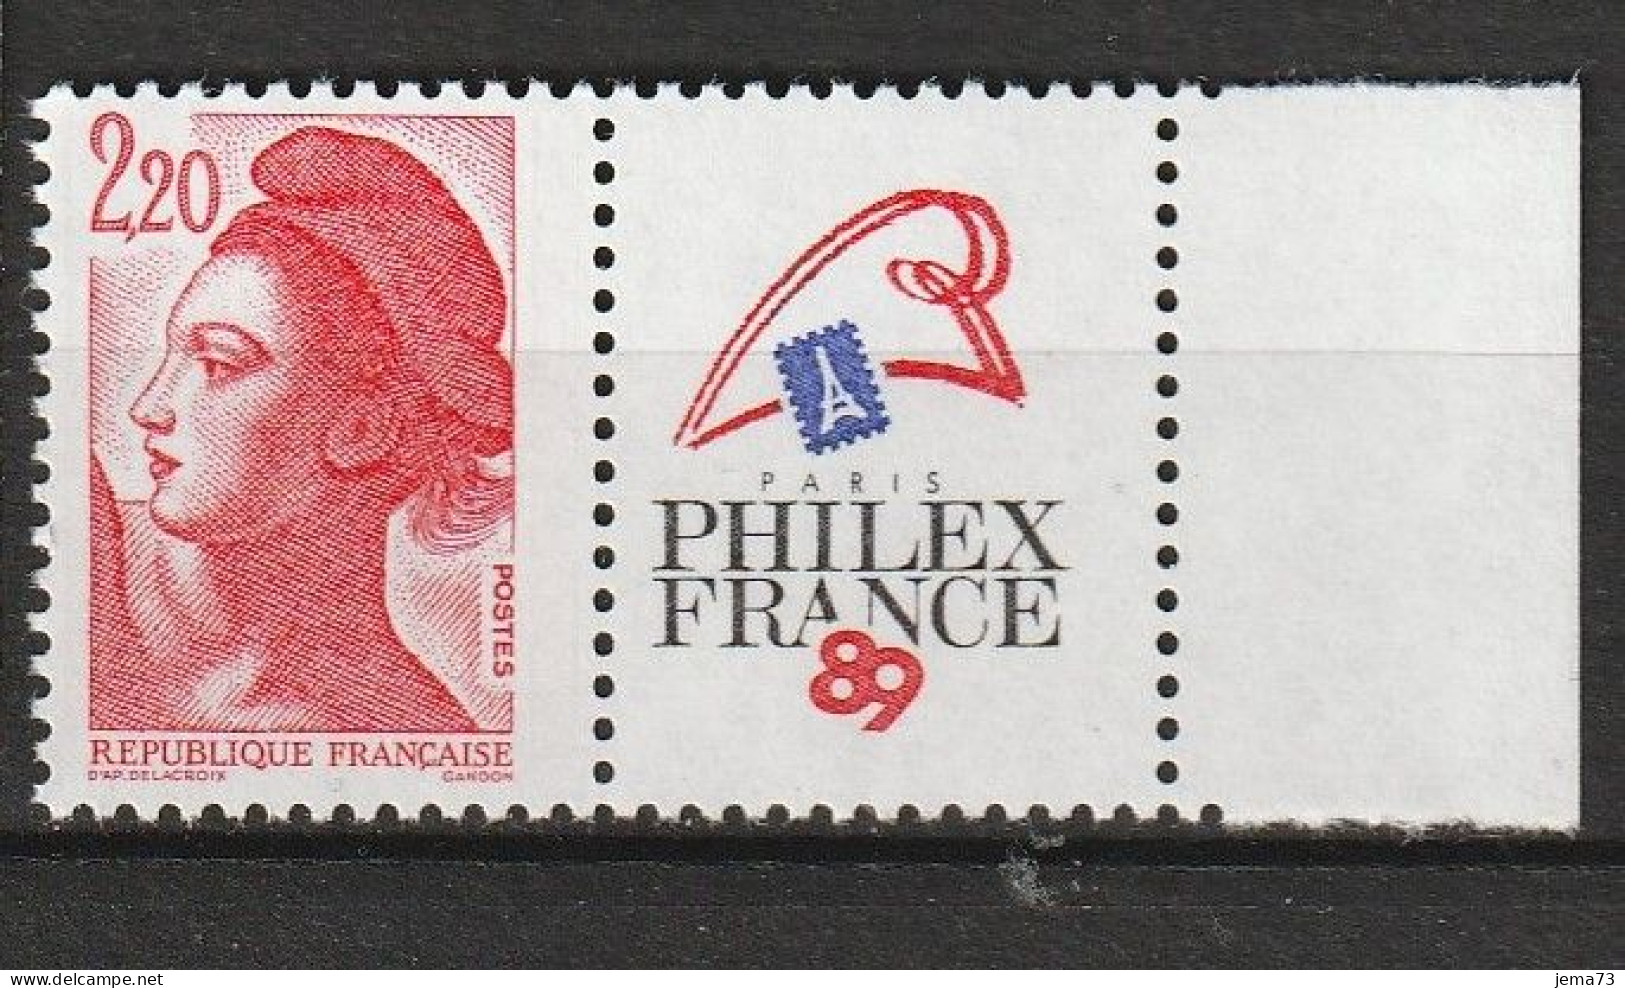 N° 2461 Philexfrance 89Exposition Philatélique Mondiale à Paris; Beau Timbre Neuf - Ungebraucht